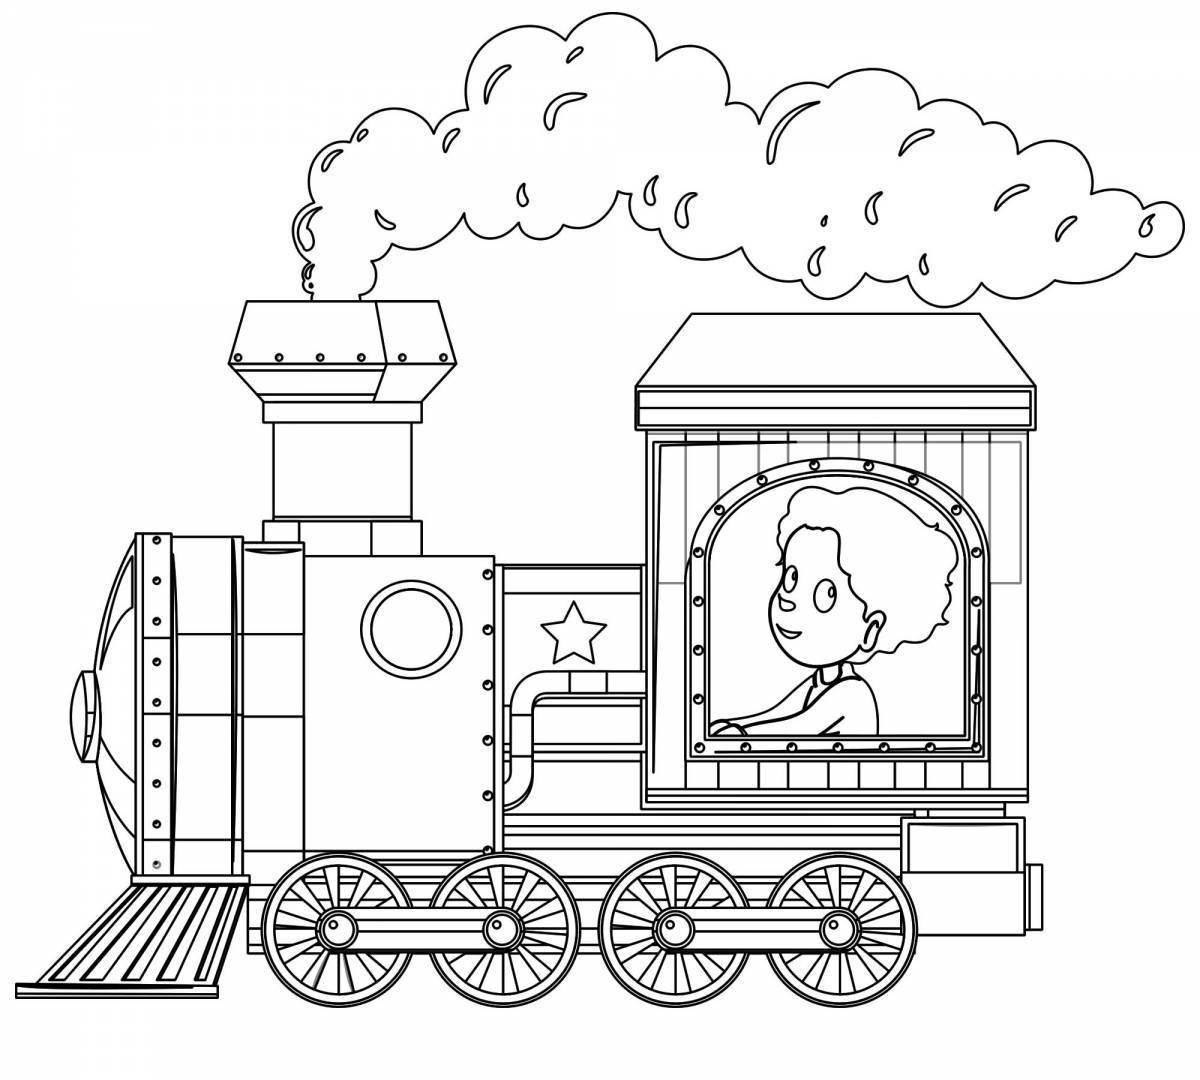 Яркая раскраска поезда для детей 4-5 лет